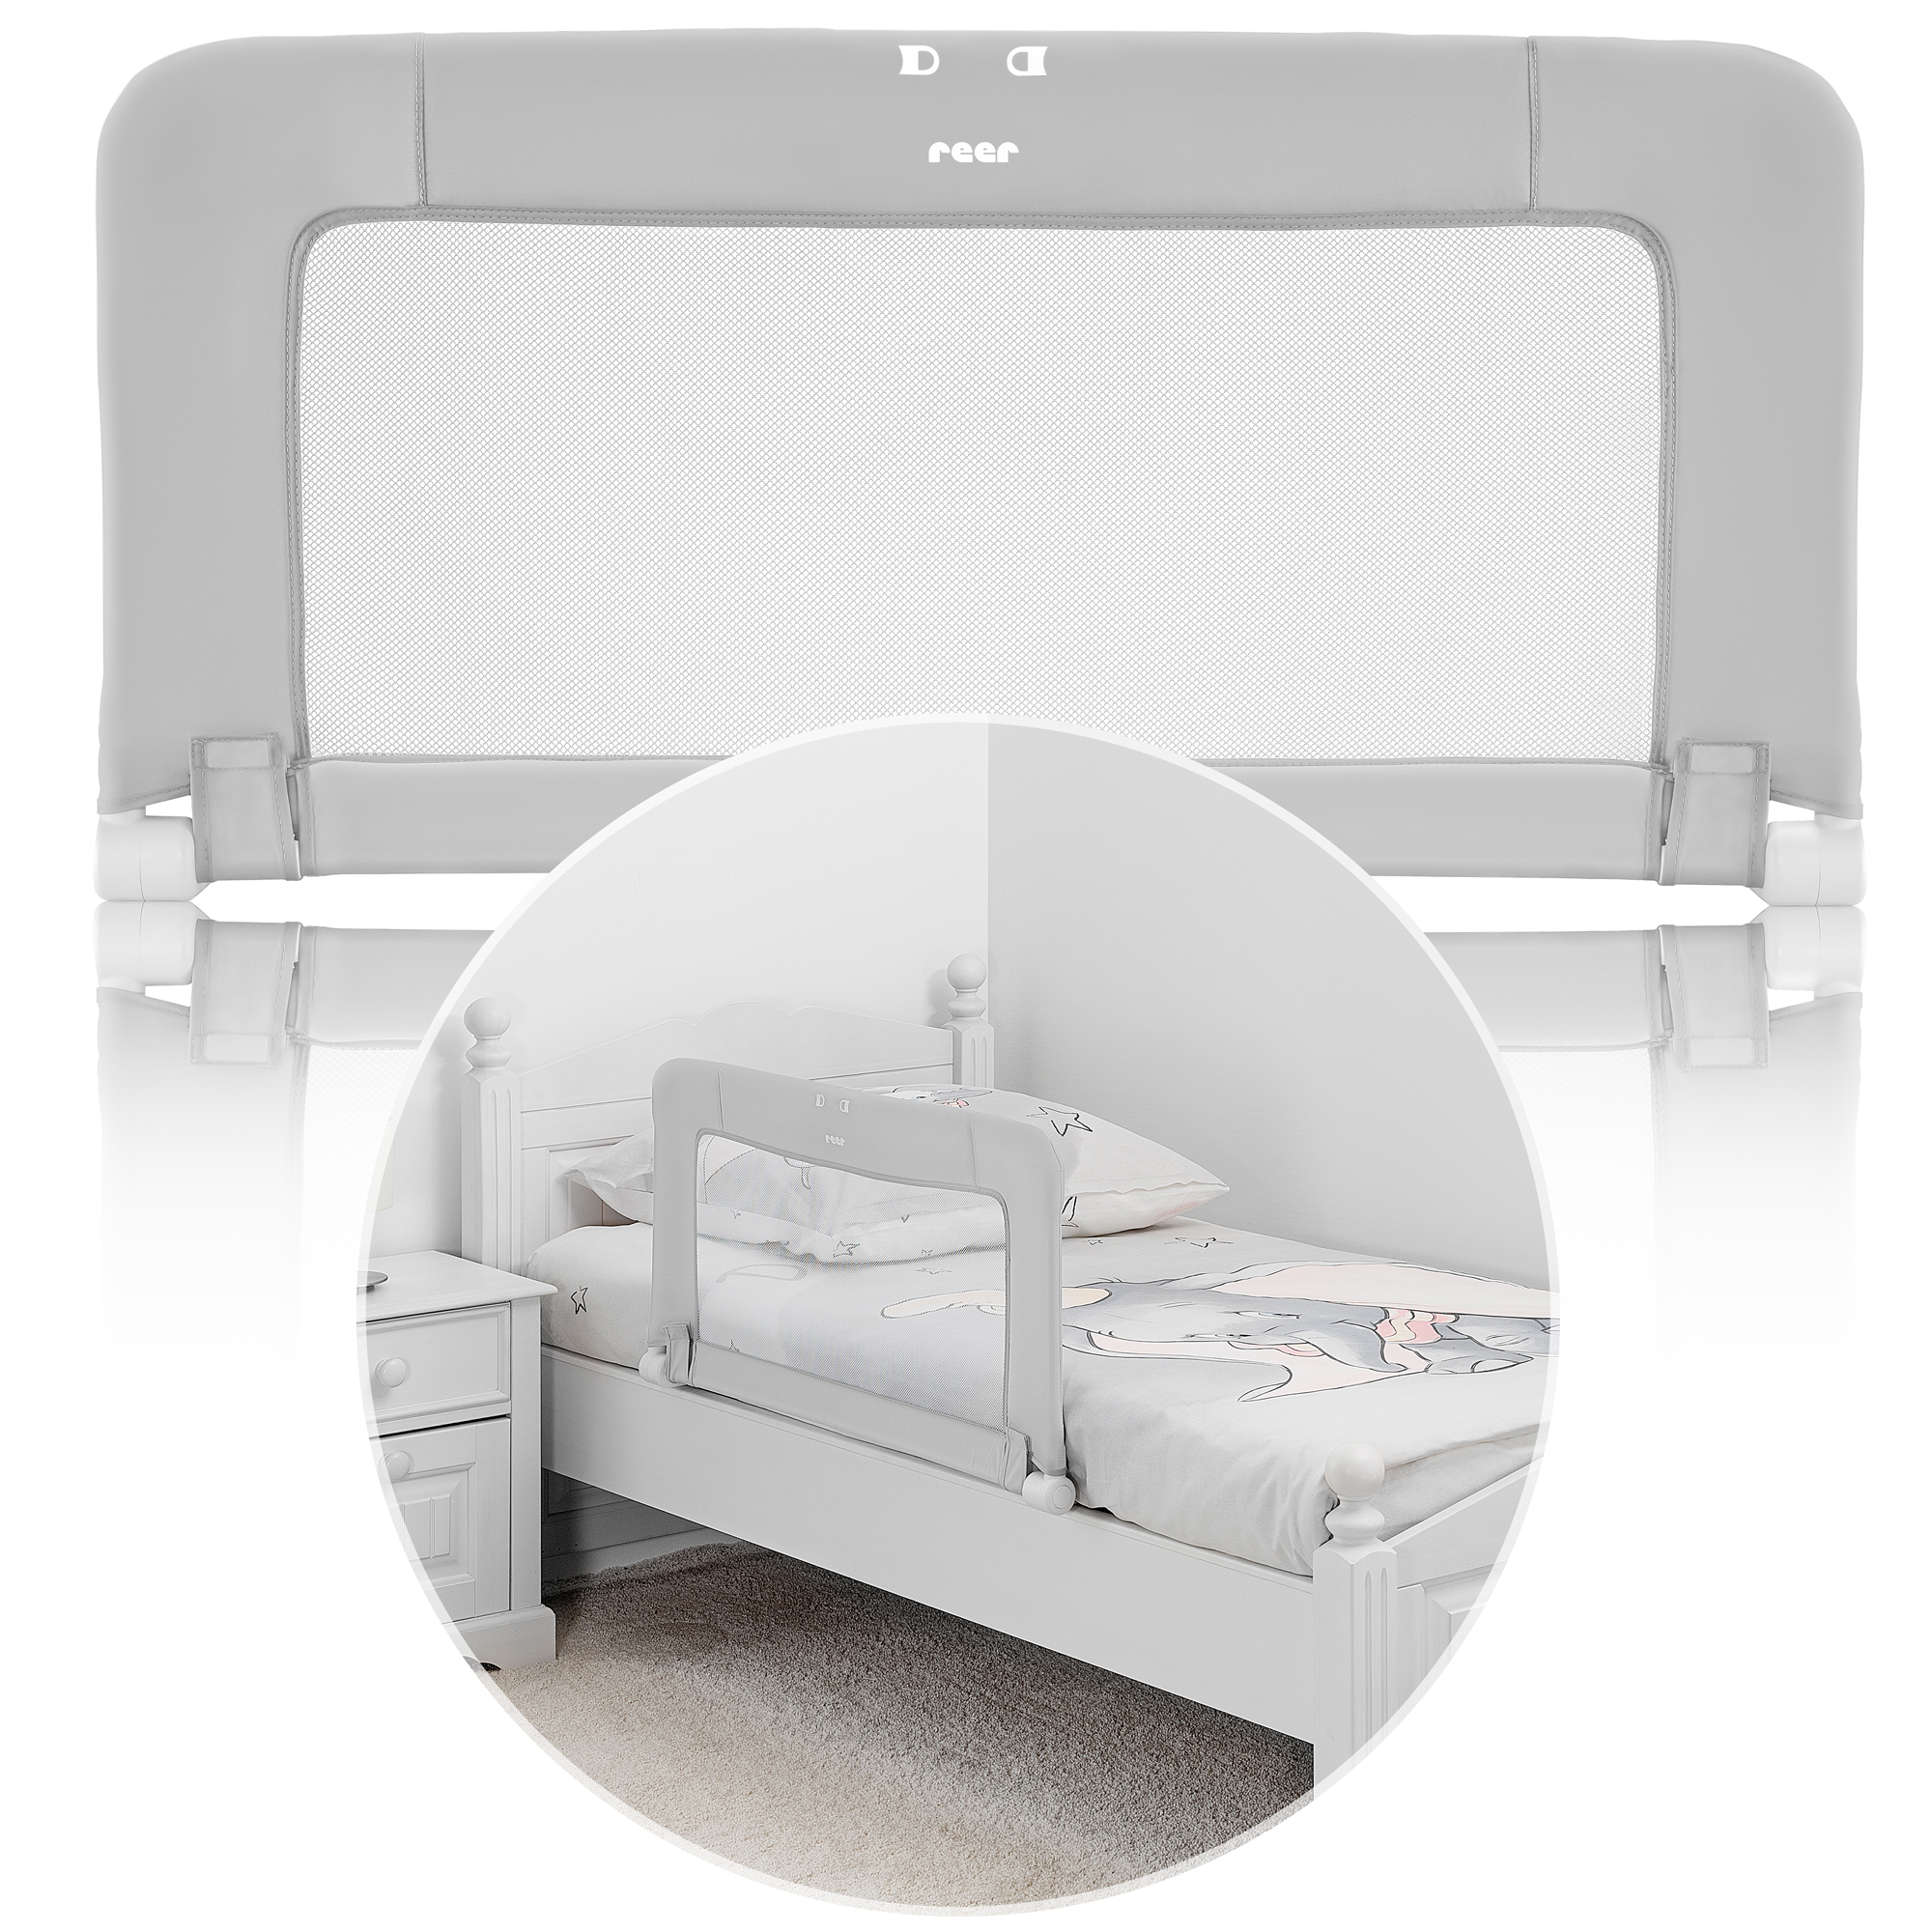 ByMySide Bettgitter mit Abklappfunktion, für Betten mit einer Länge von 150 -180 cm